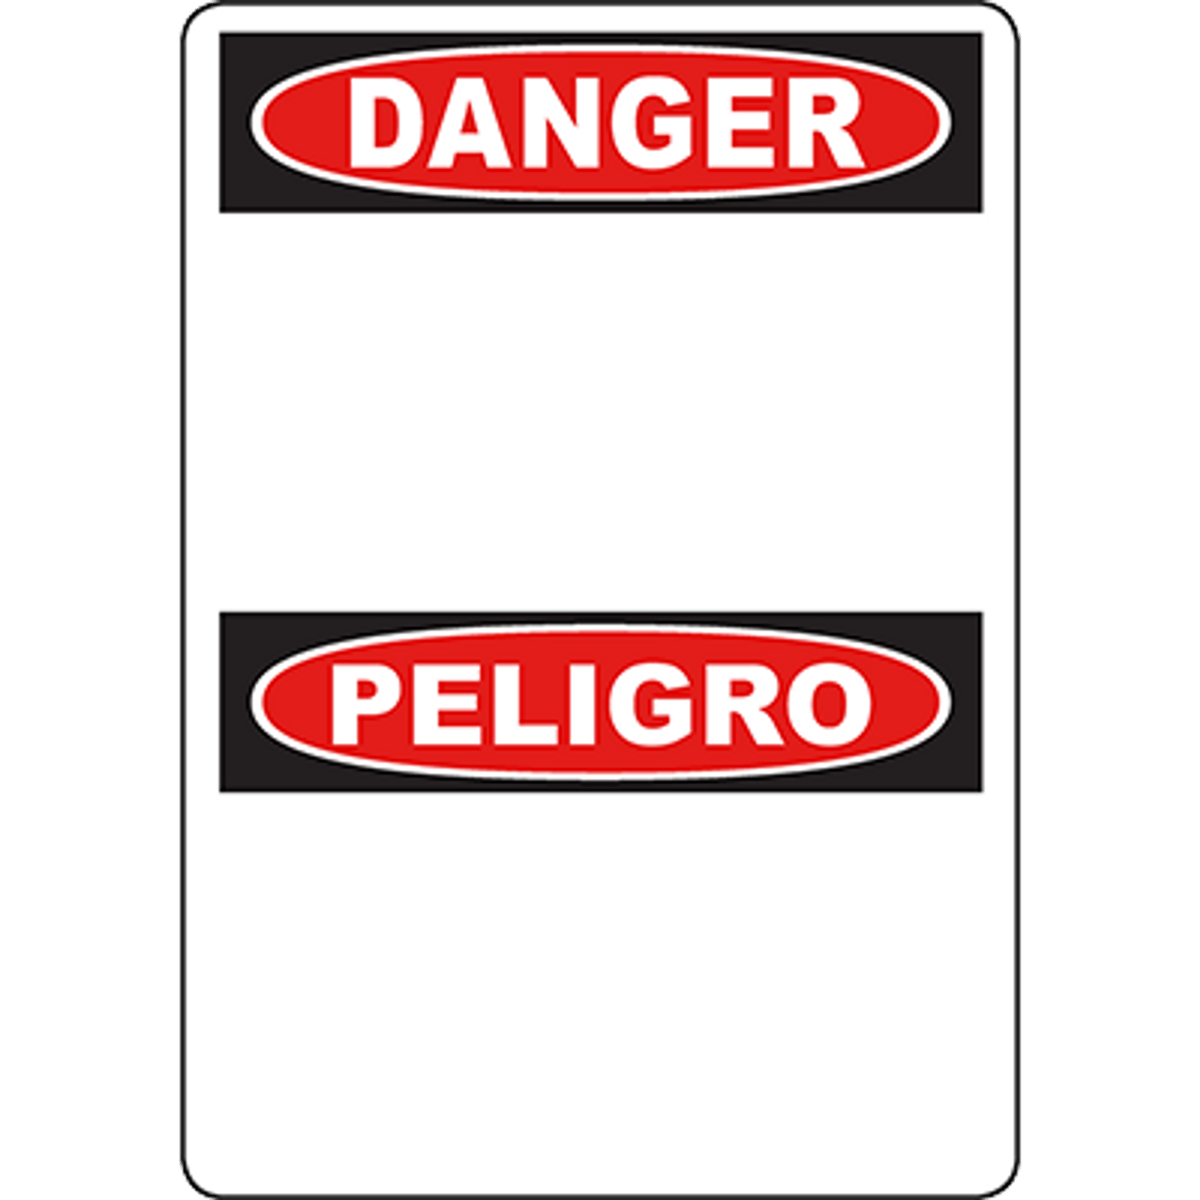 Danger - Peligro Sign